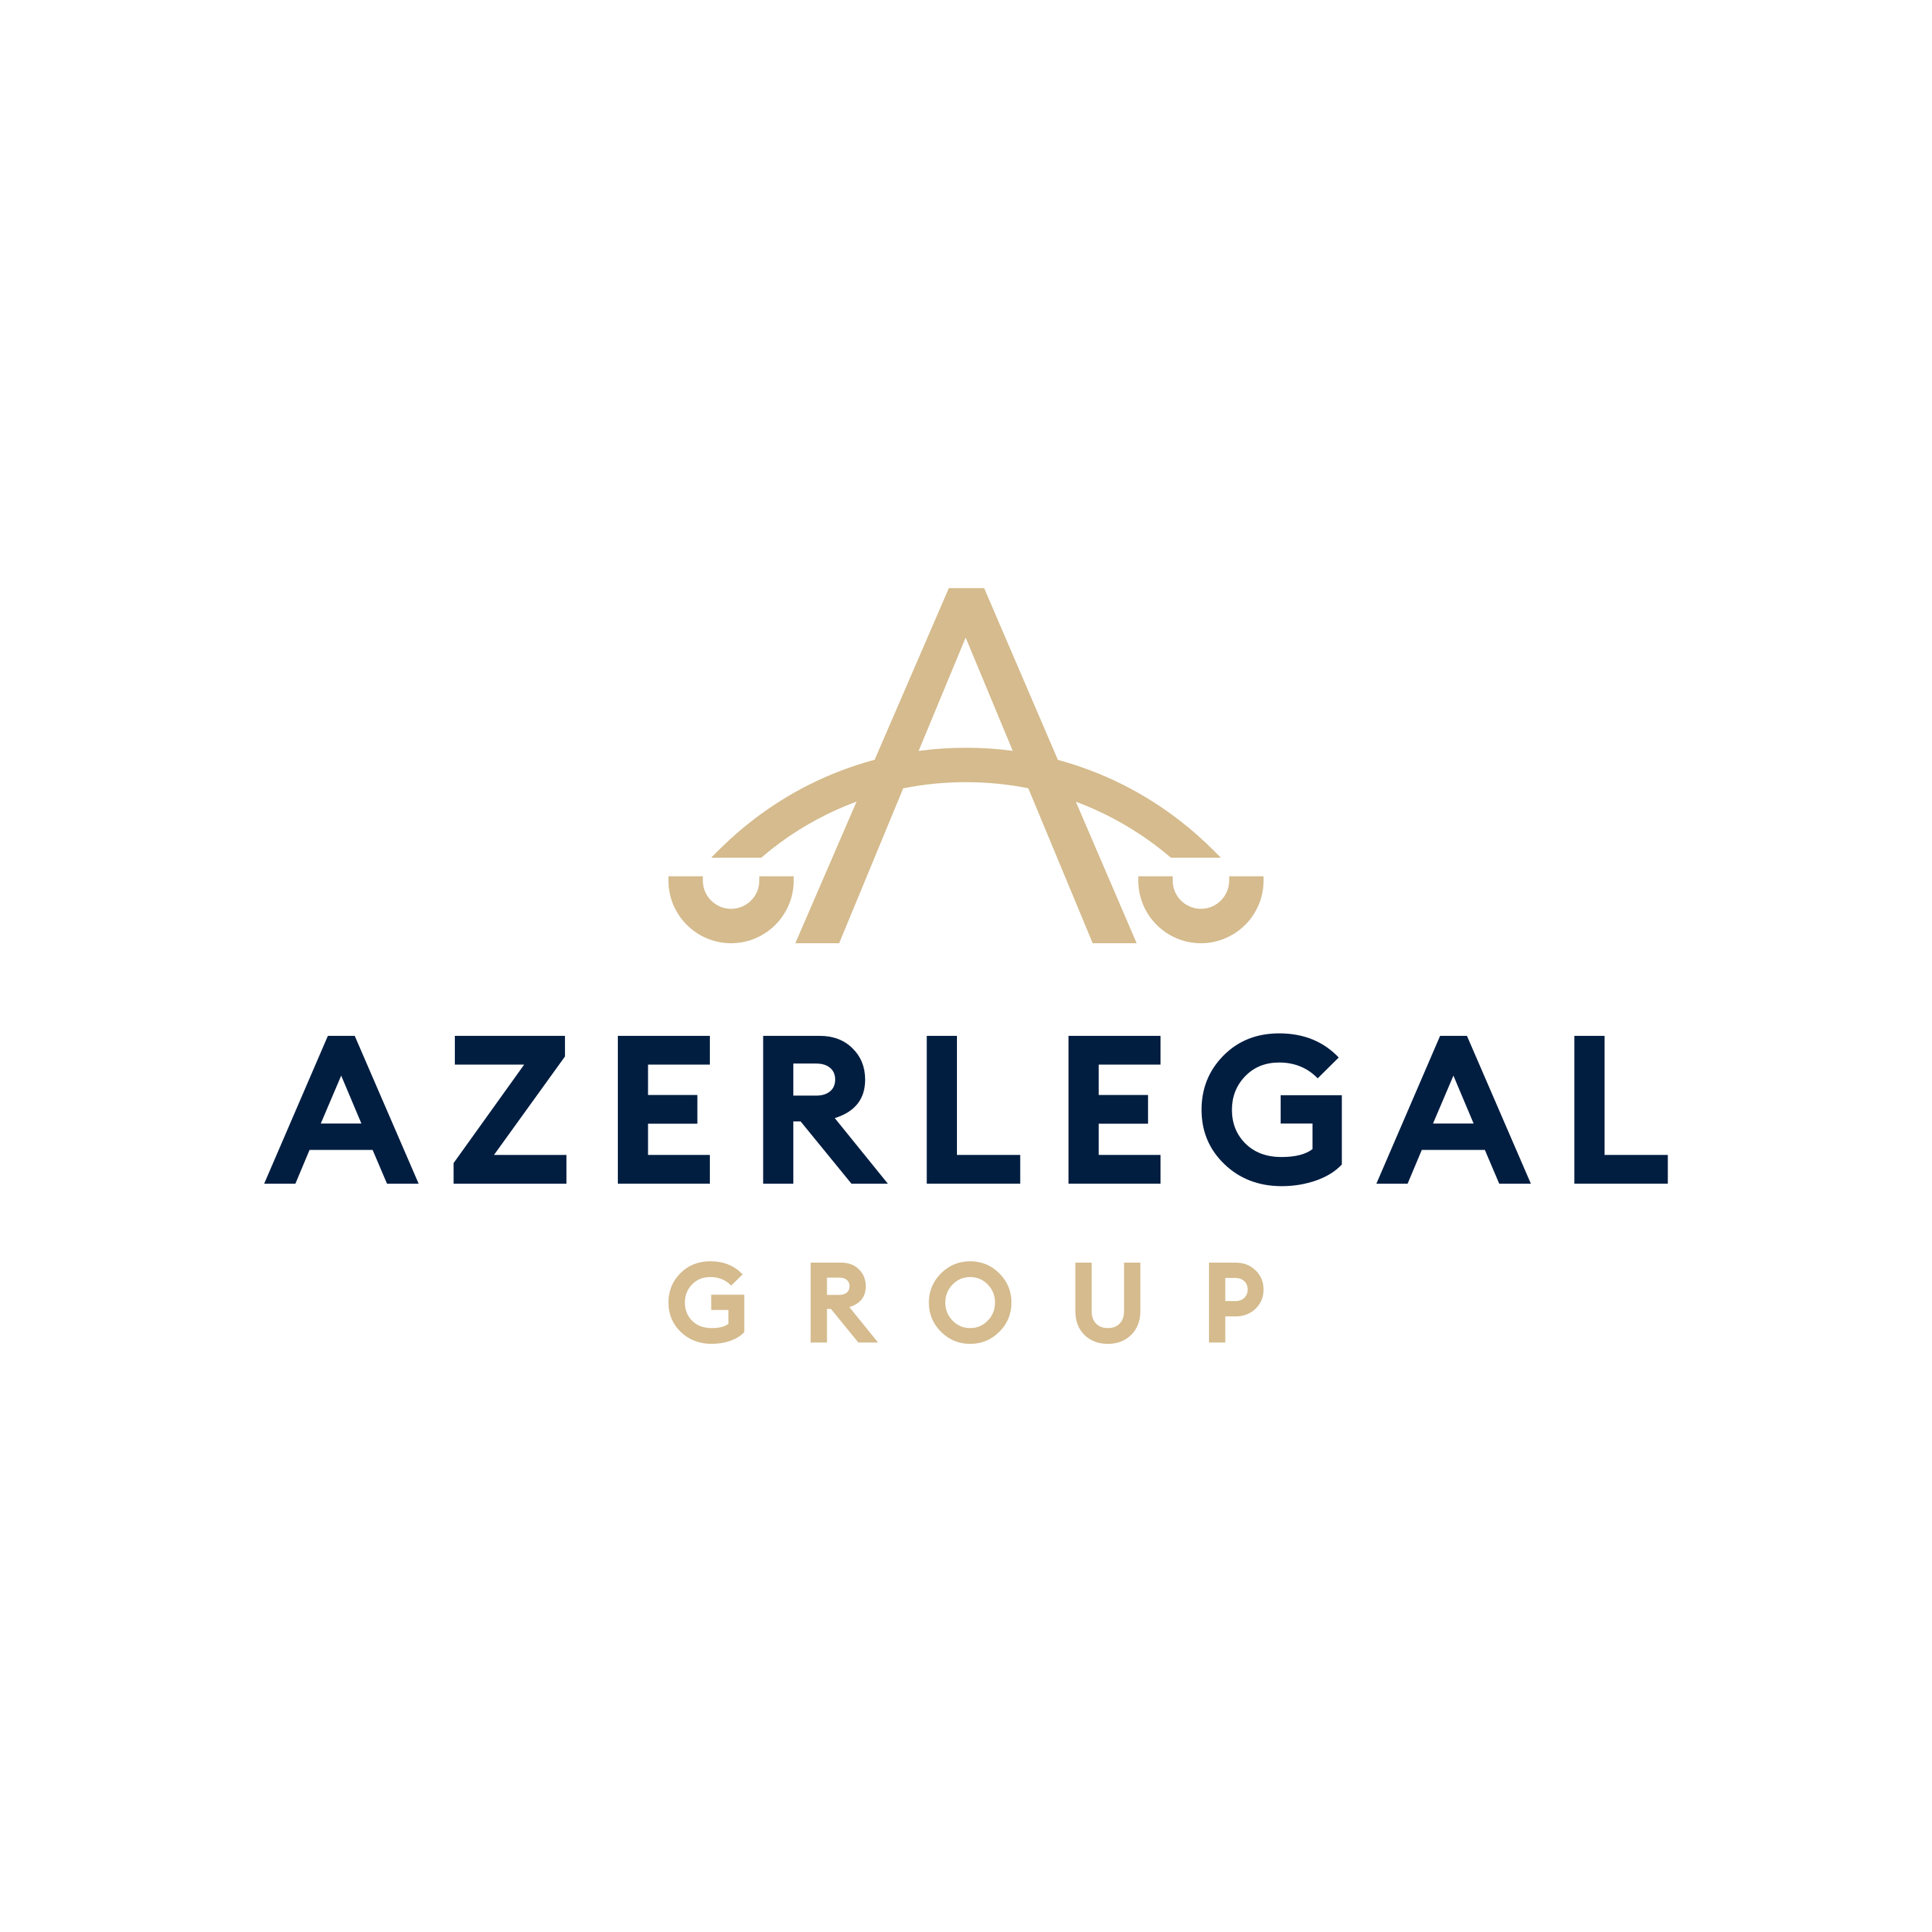 Azər Legal Group